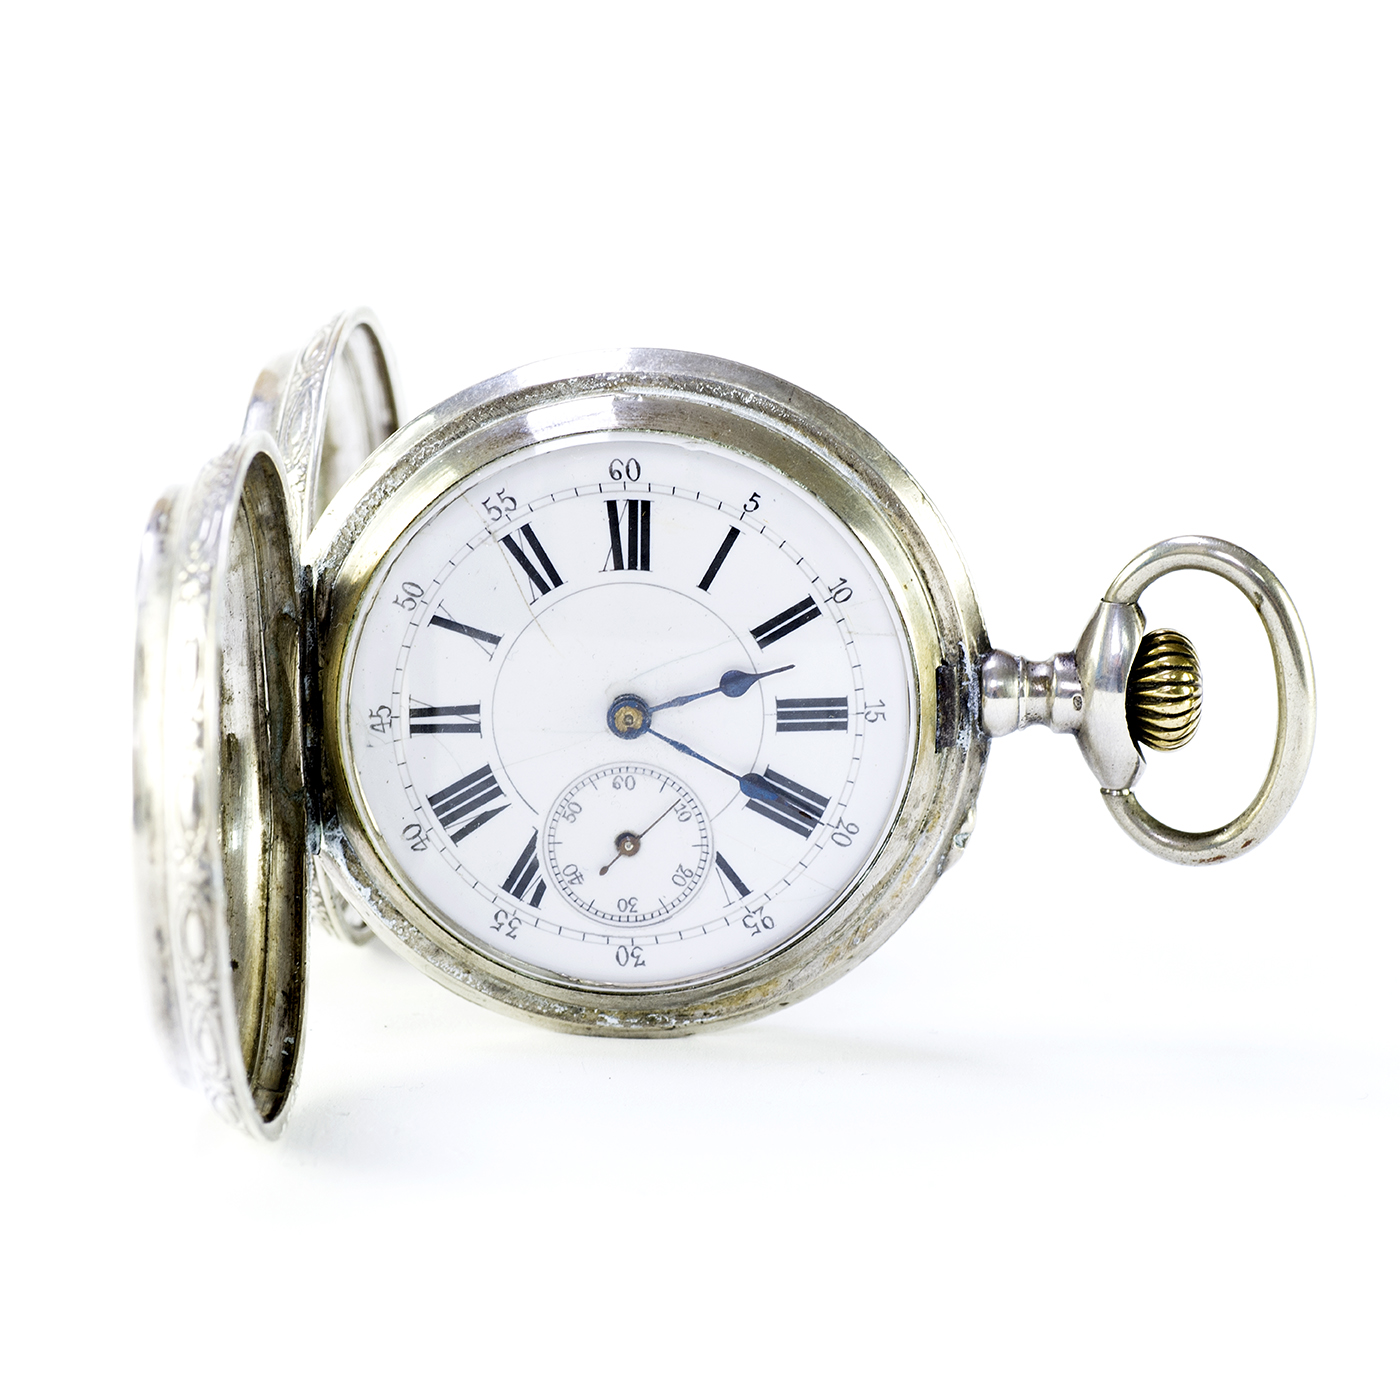 ROBERT. Reloj de bolsillo, saboneta y remontoir. Suiza, ca. 1825